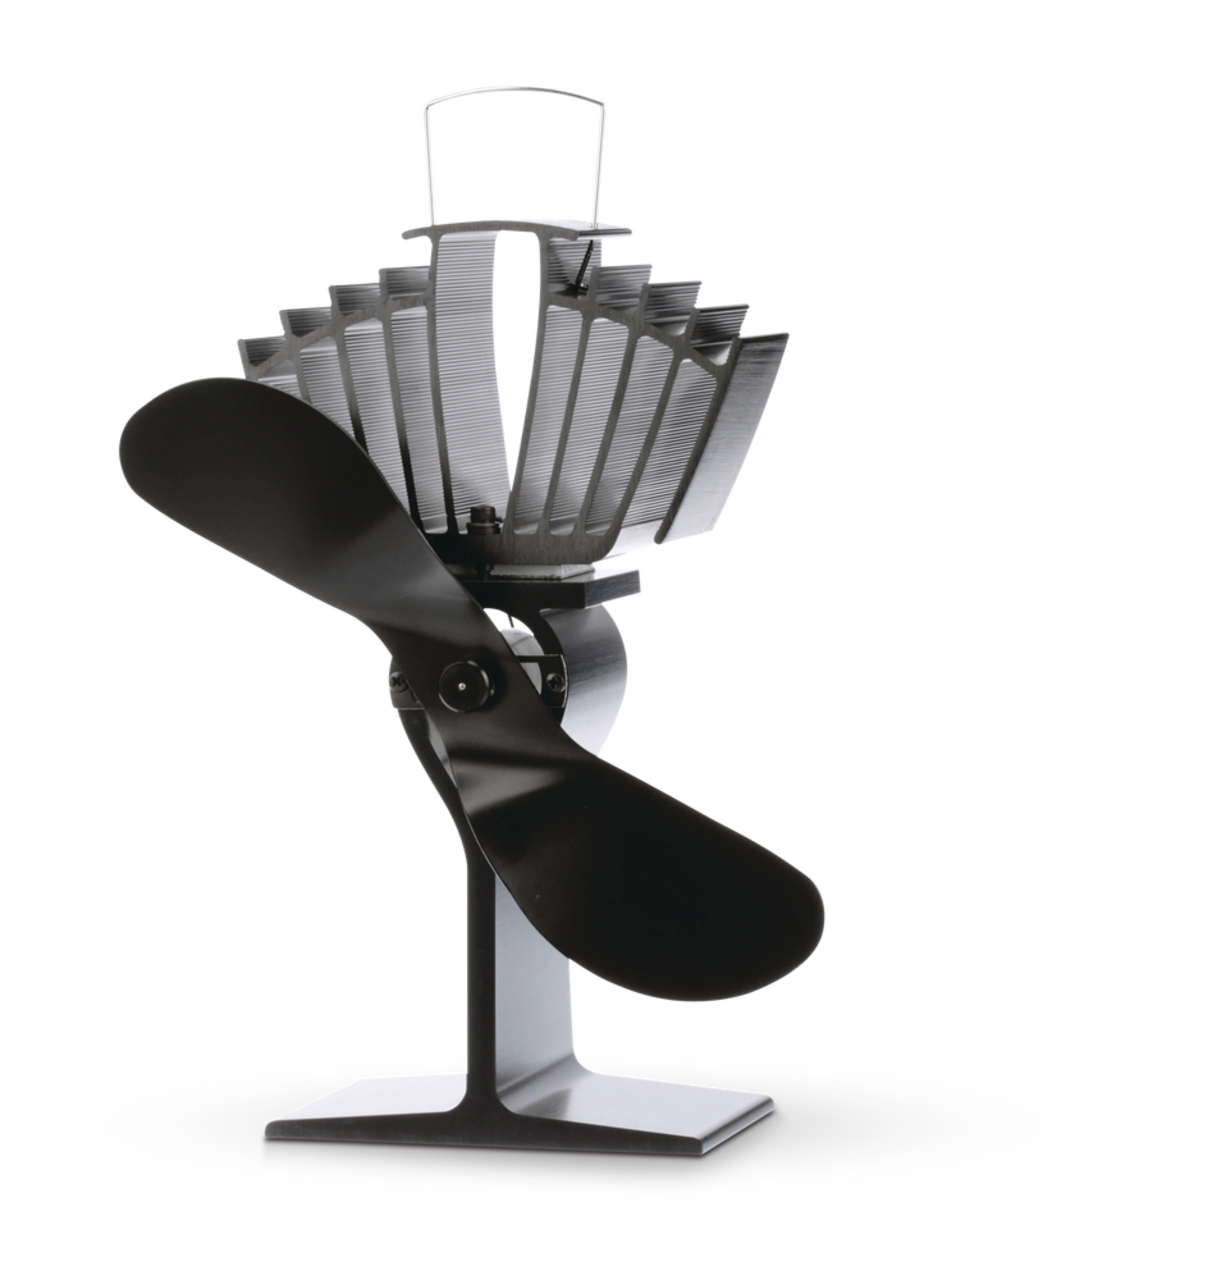 Ventilateur pour poêle à bois alimenté par chaleur grand format Ecofan  AirMax, circulation d'air chaud, 175 pi3/min, noir